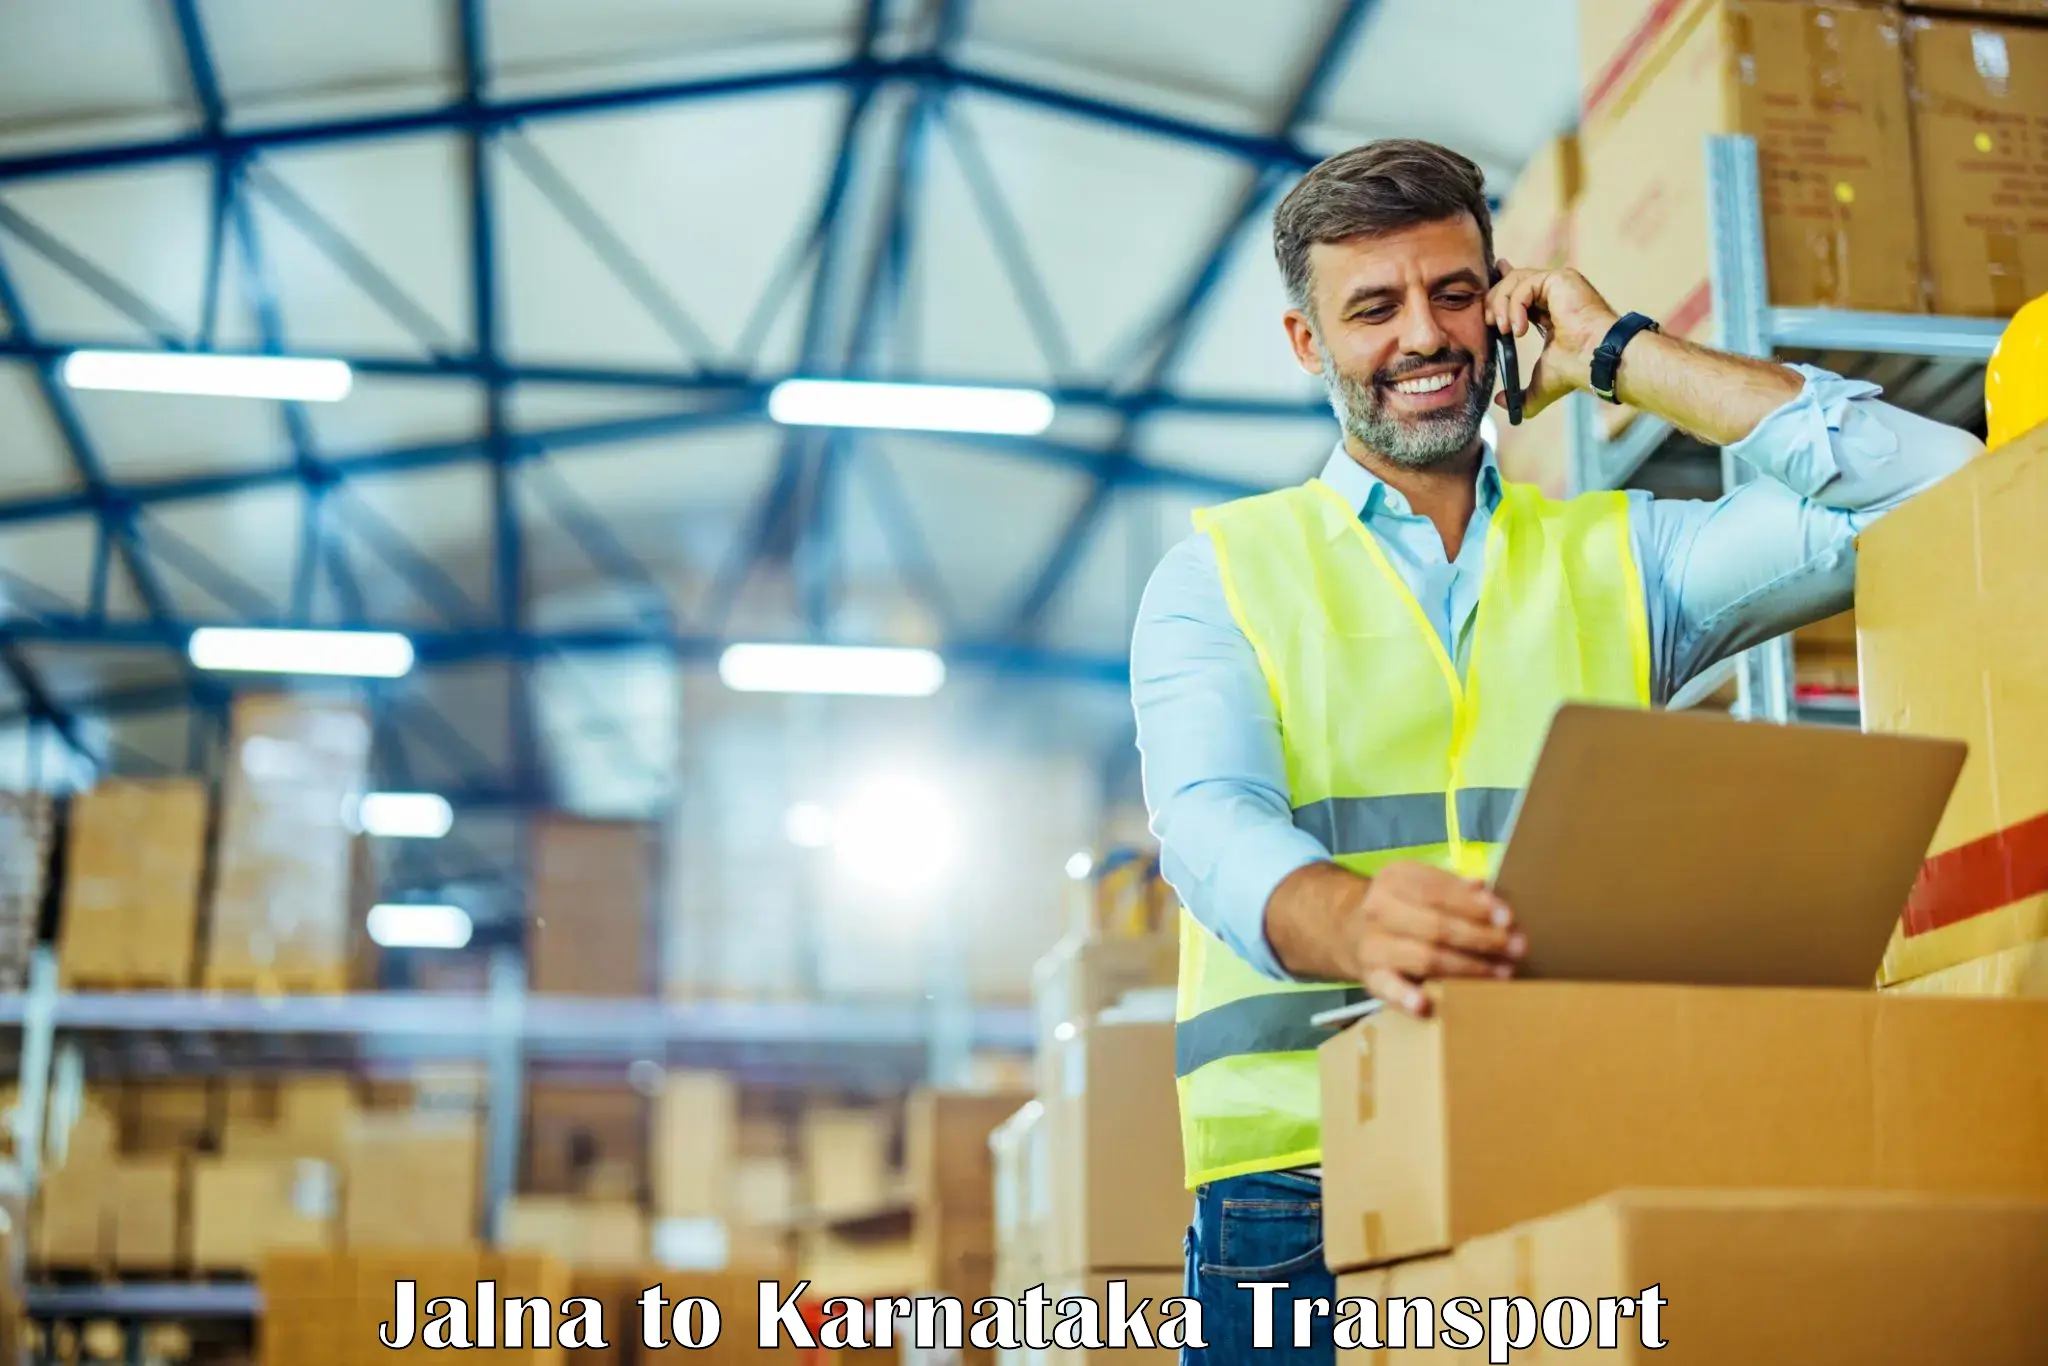 Online transport service Jalna to Karnataka